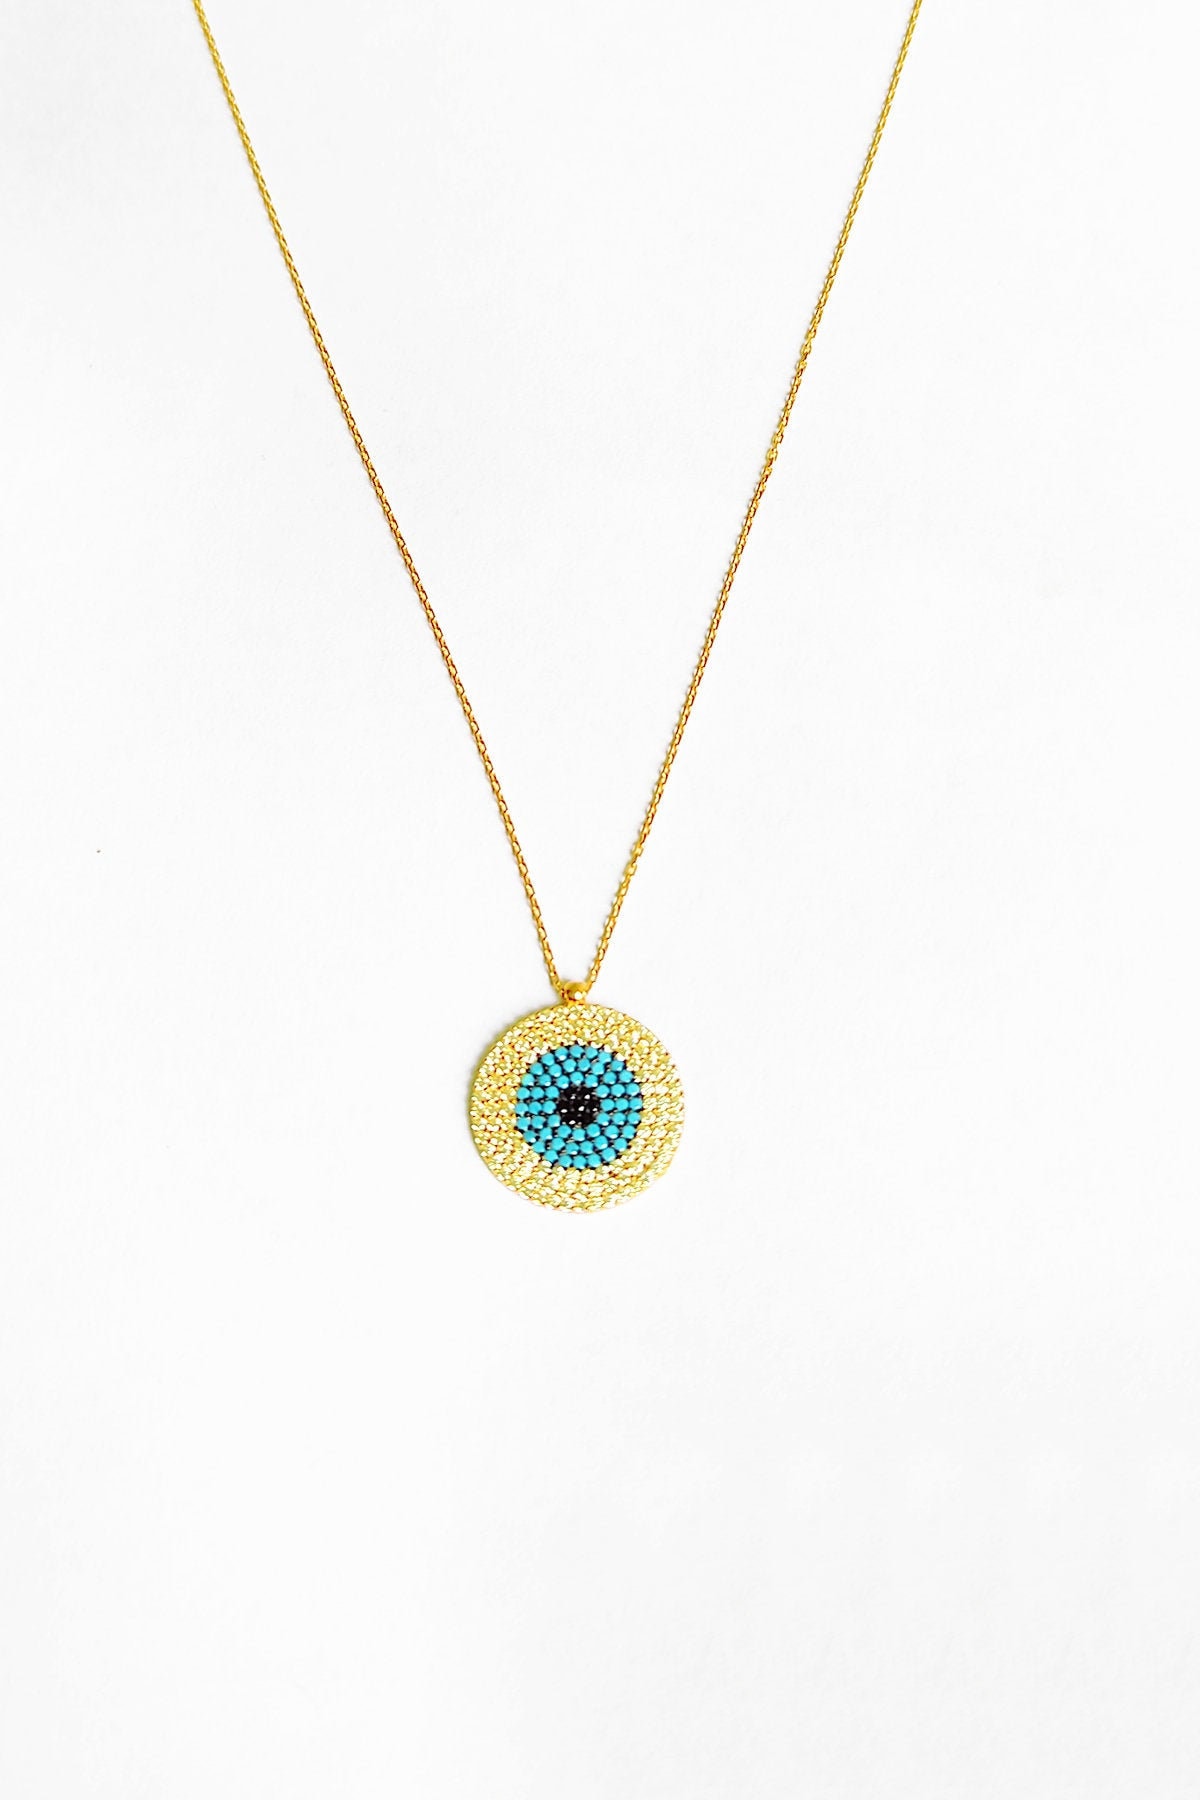 Türkis Stein Silber Evil Eye Halskette, Gold Kette Chunky, Geschenk Für Sie, Anhänger von kozmodanet